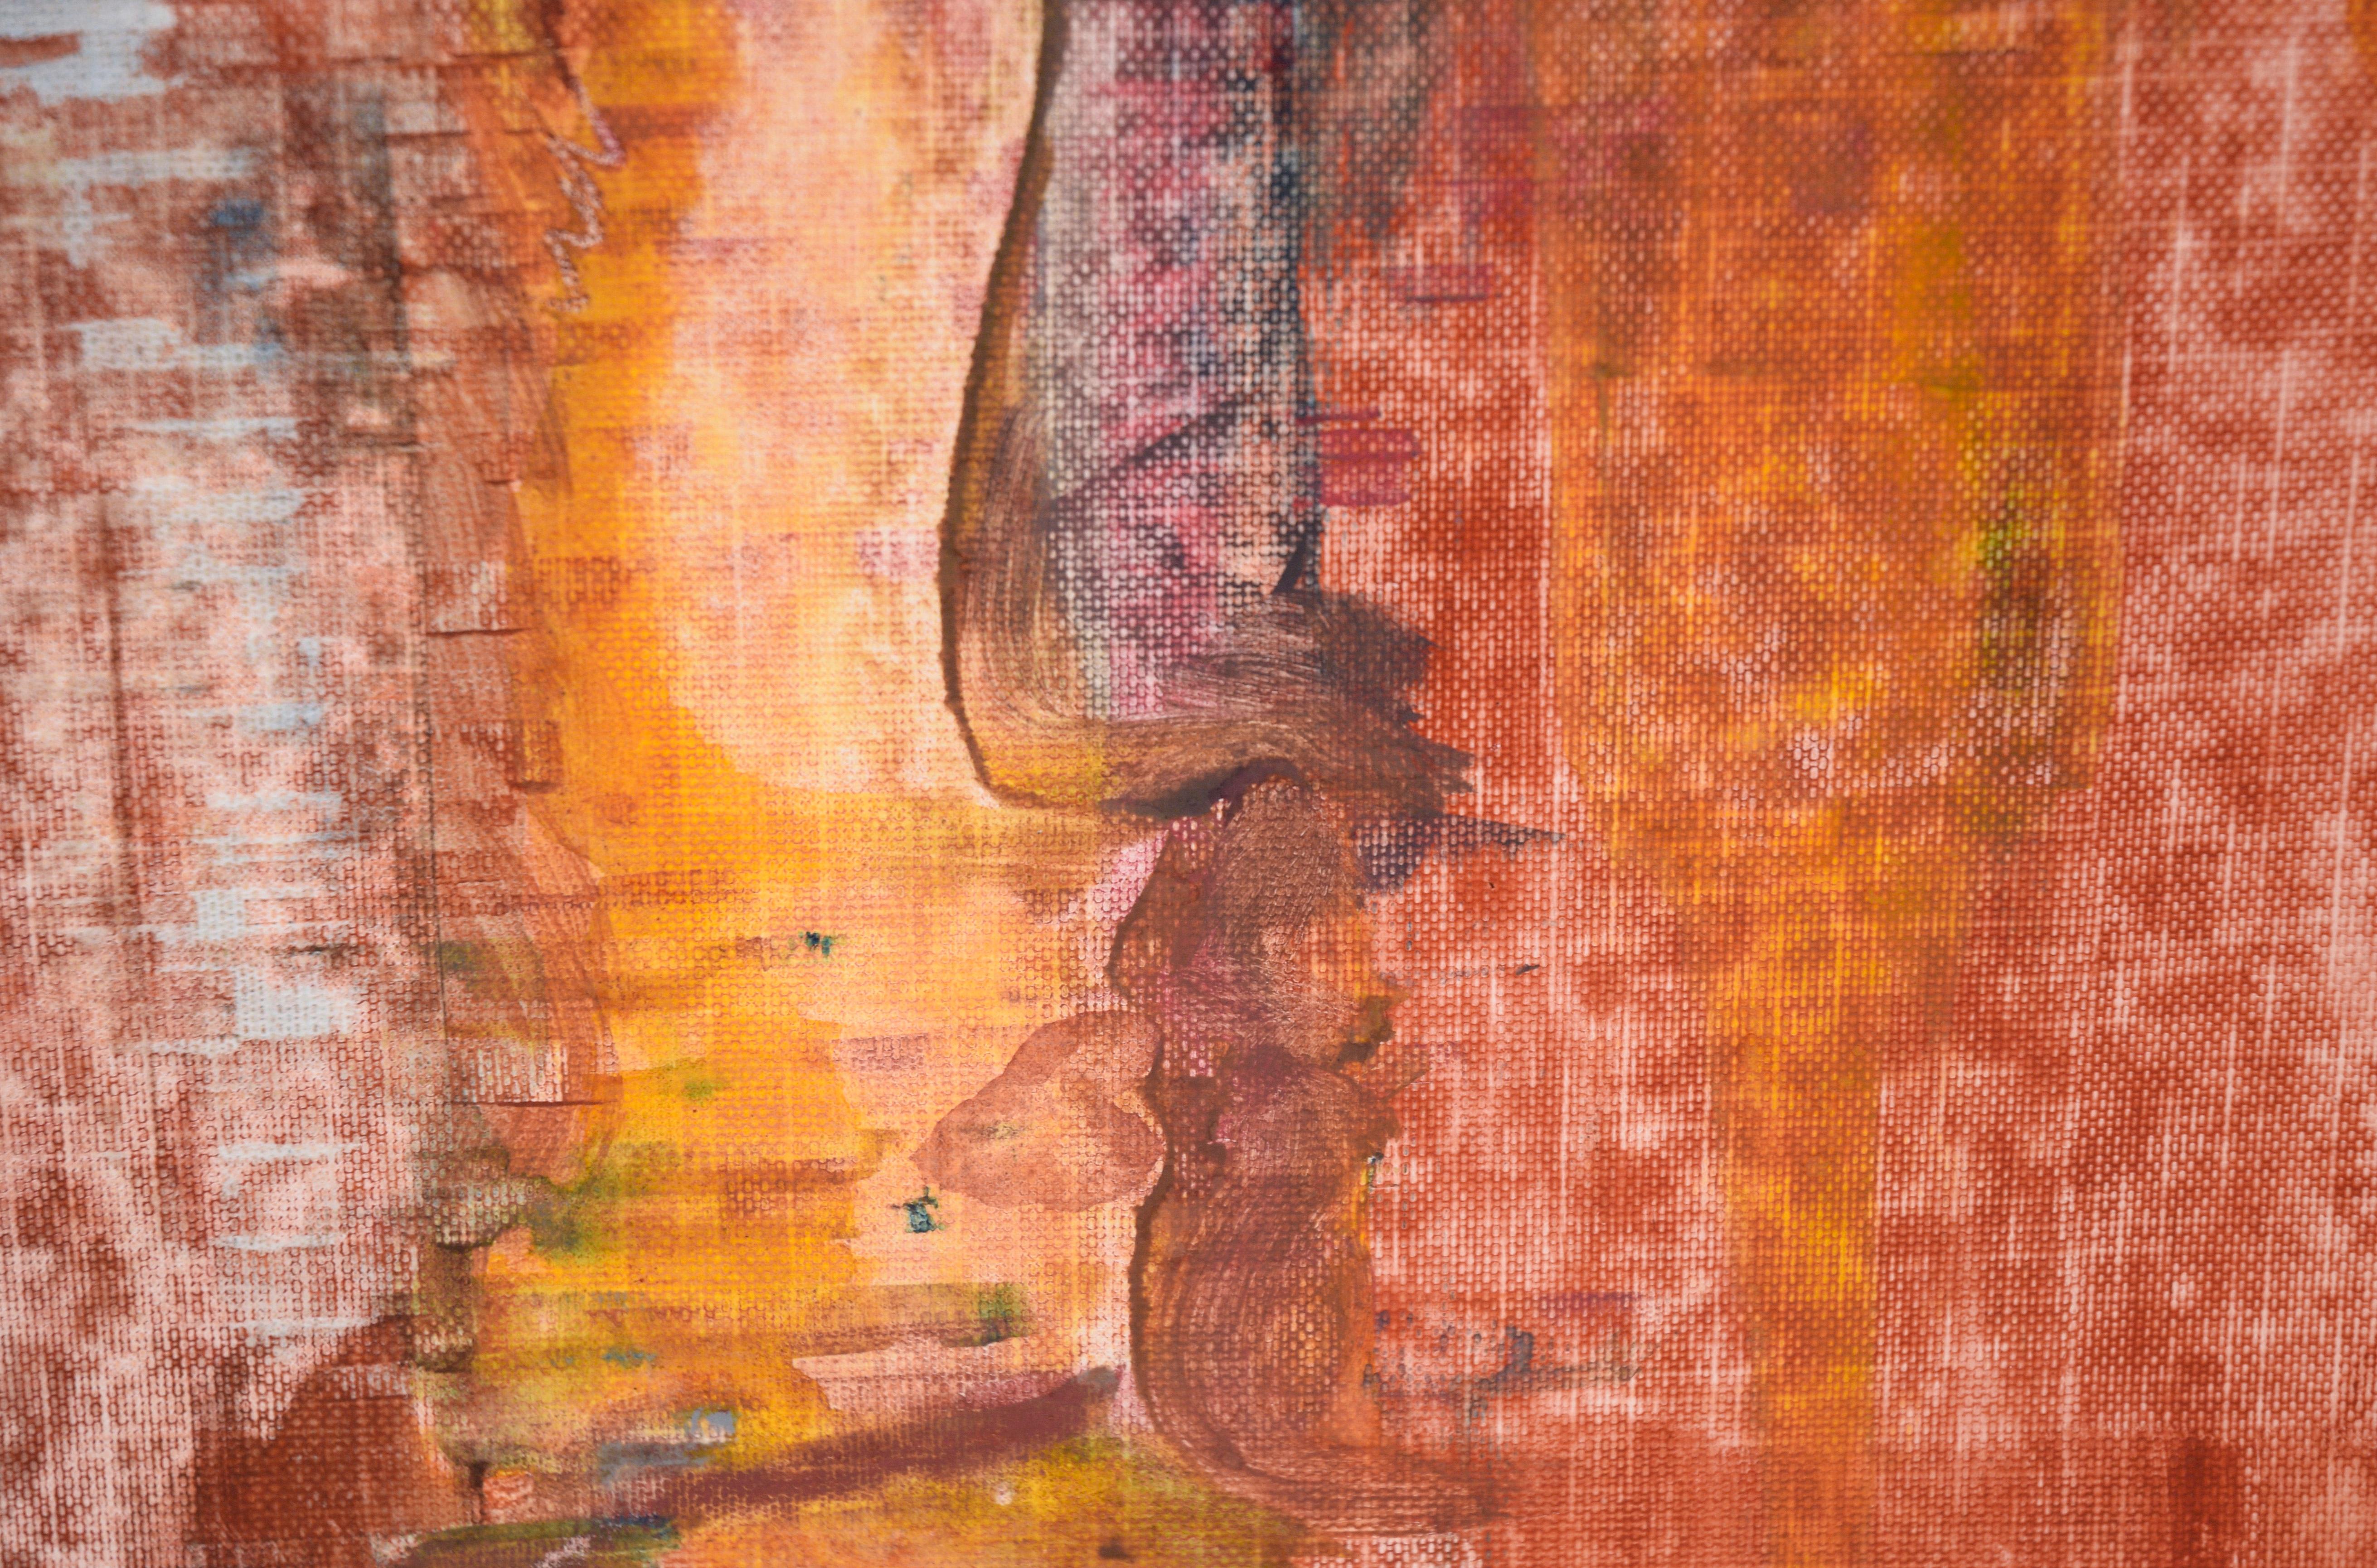 Steinerne Gesichter - Abstraktes Portrait in Acryl auf strukturiertem Papier

Abstraktes Porträt des in Kalifornien lebenden Künstlers Ricardo de Silva (Brasilianer, 20. Jahrhundert). Zwei Gesichter werden zusammengeführt, indem sie sich so